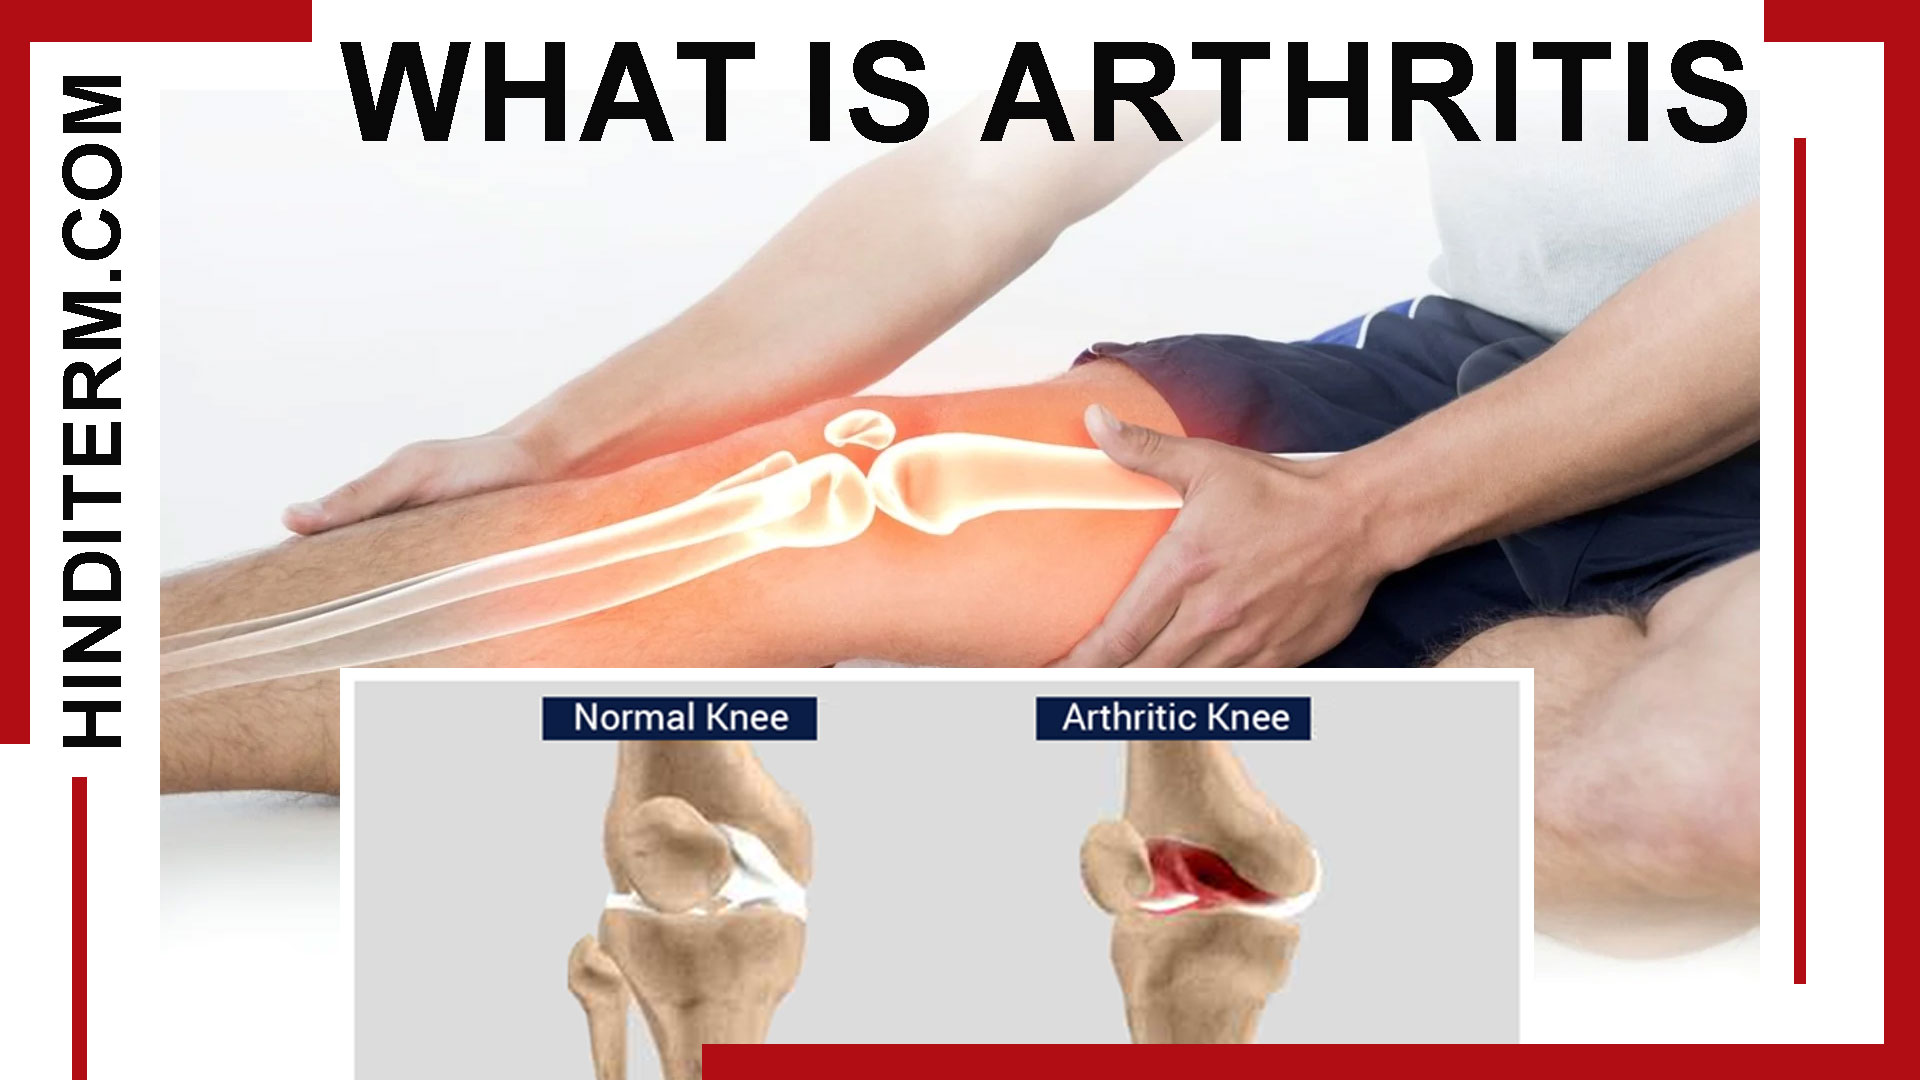 आर्थराइटिस क्या और क्यों होता है, तथा किसकी कमी से होता है?